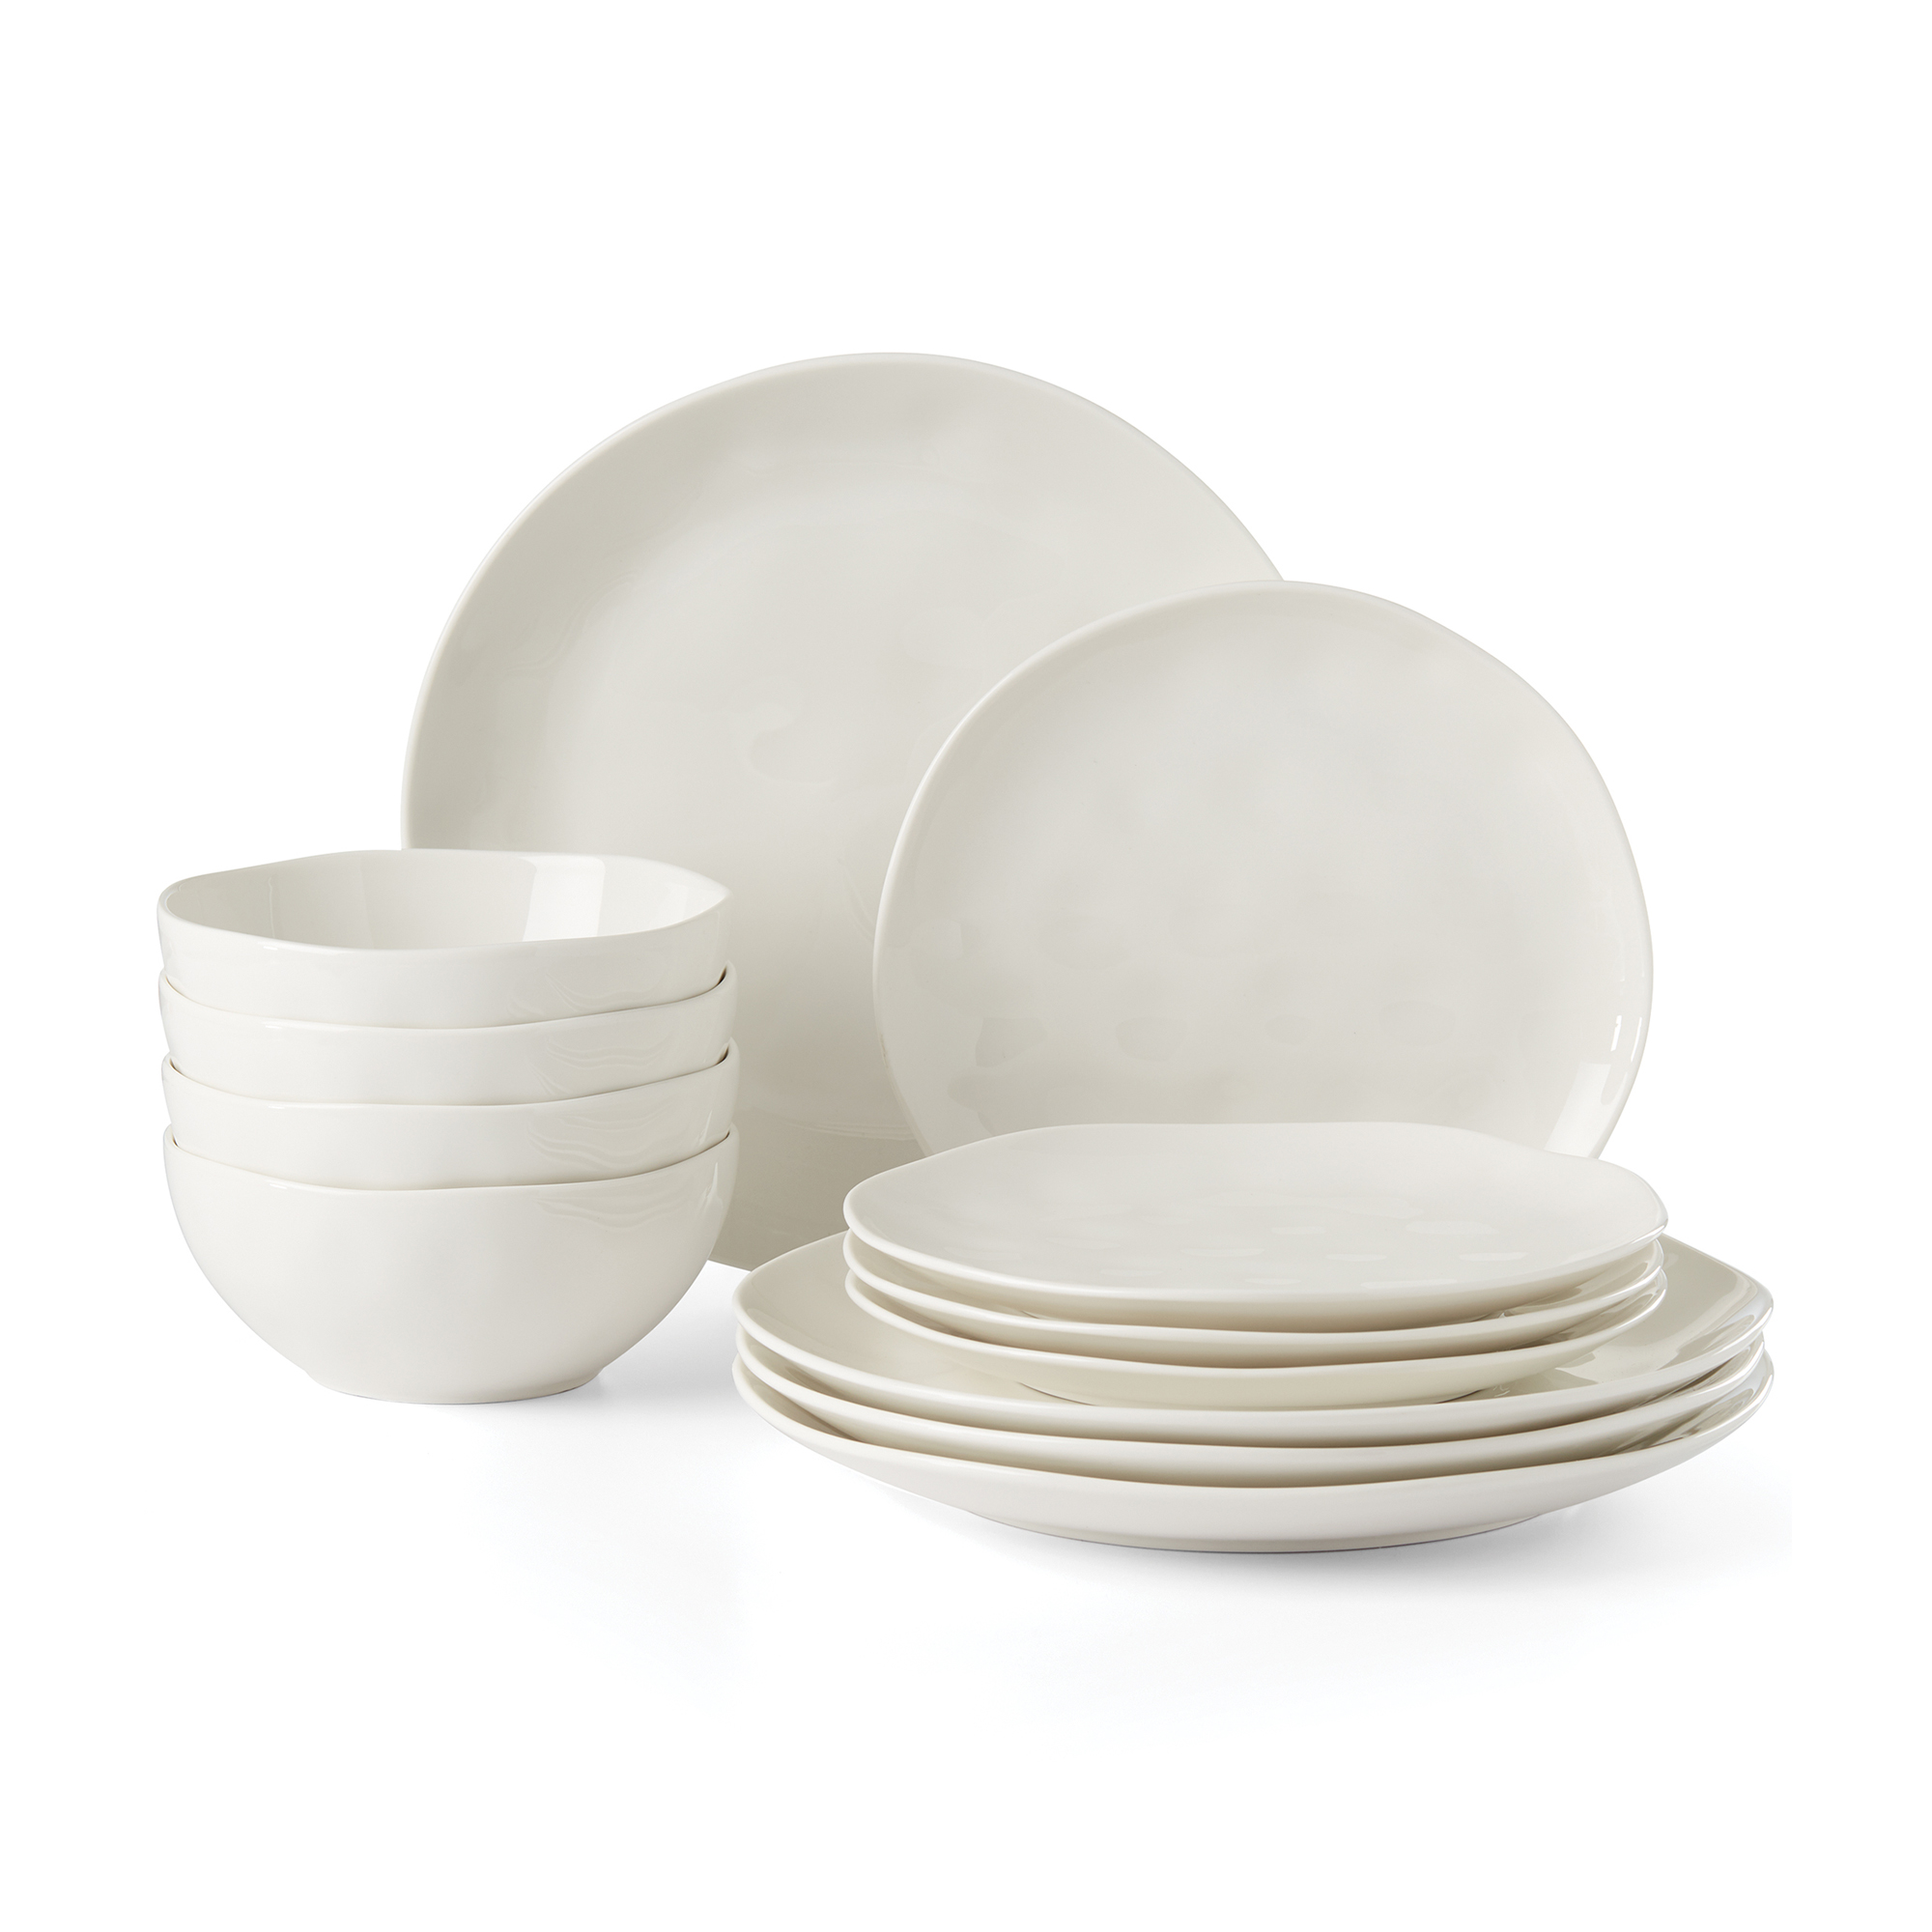 Lenox "Blue Bay" 12-pc. Service for 4 White Dinnerware Set | Ross-Simons